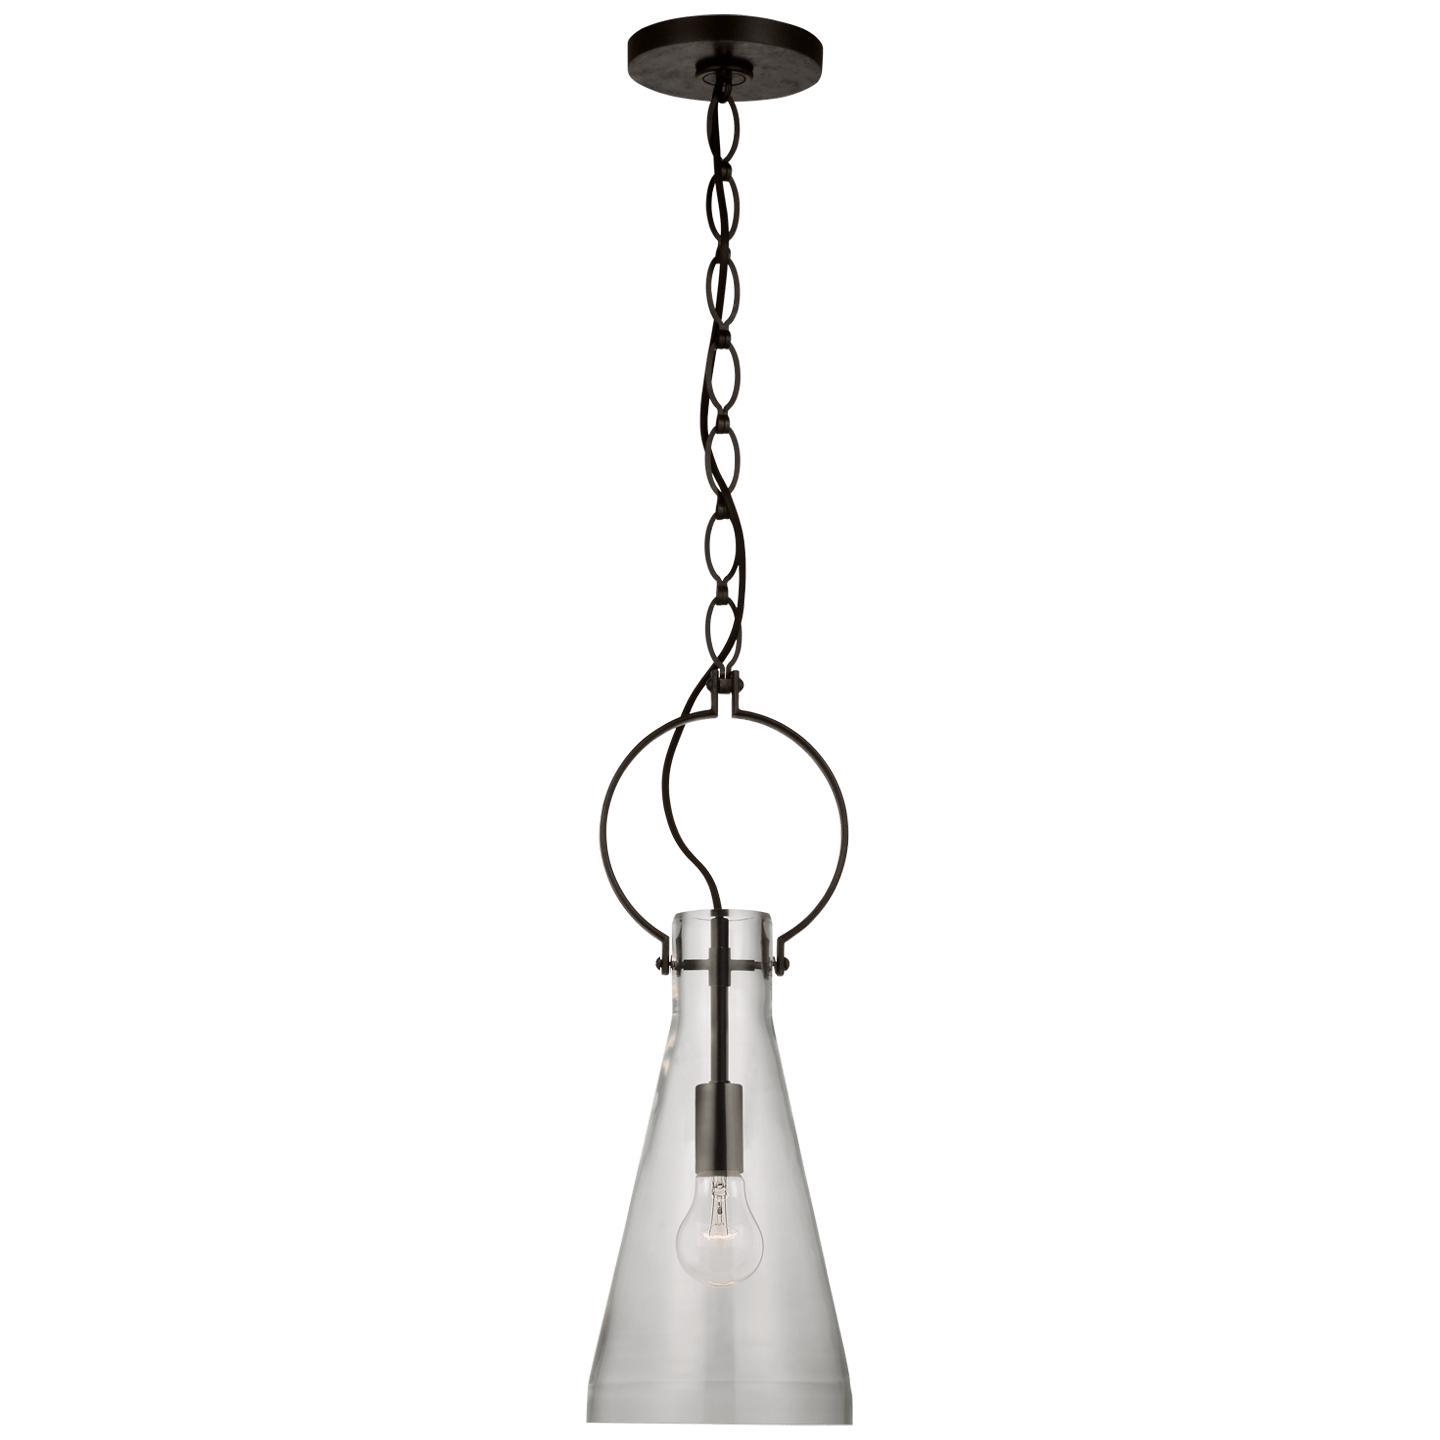 Купить Подвесной светильник Limoges Small Pendant в интернет-магазине roooms.ru